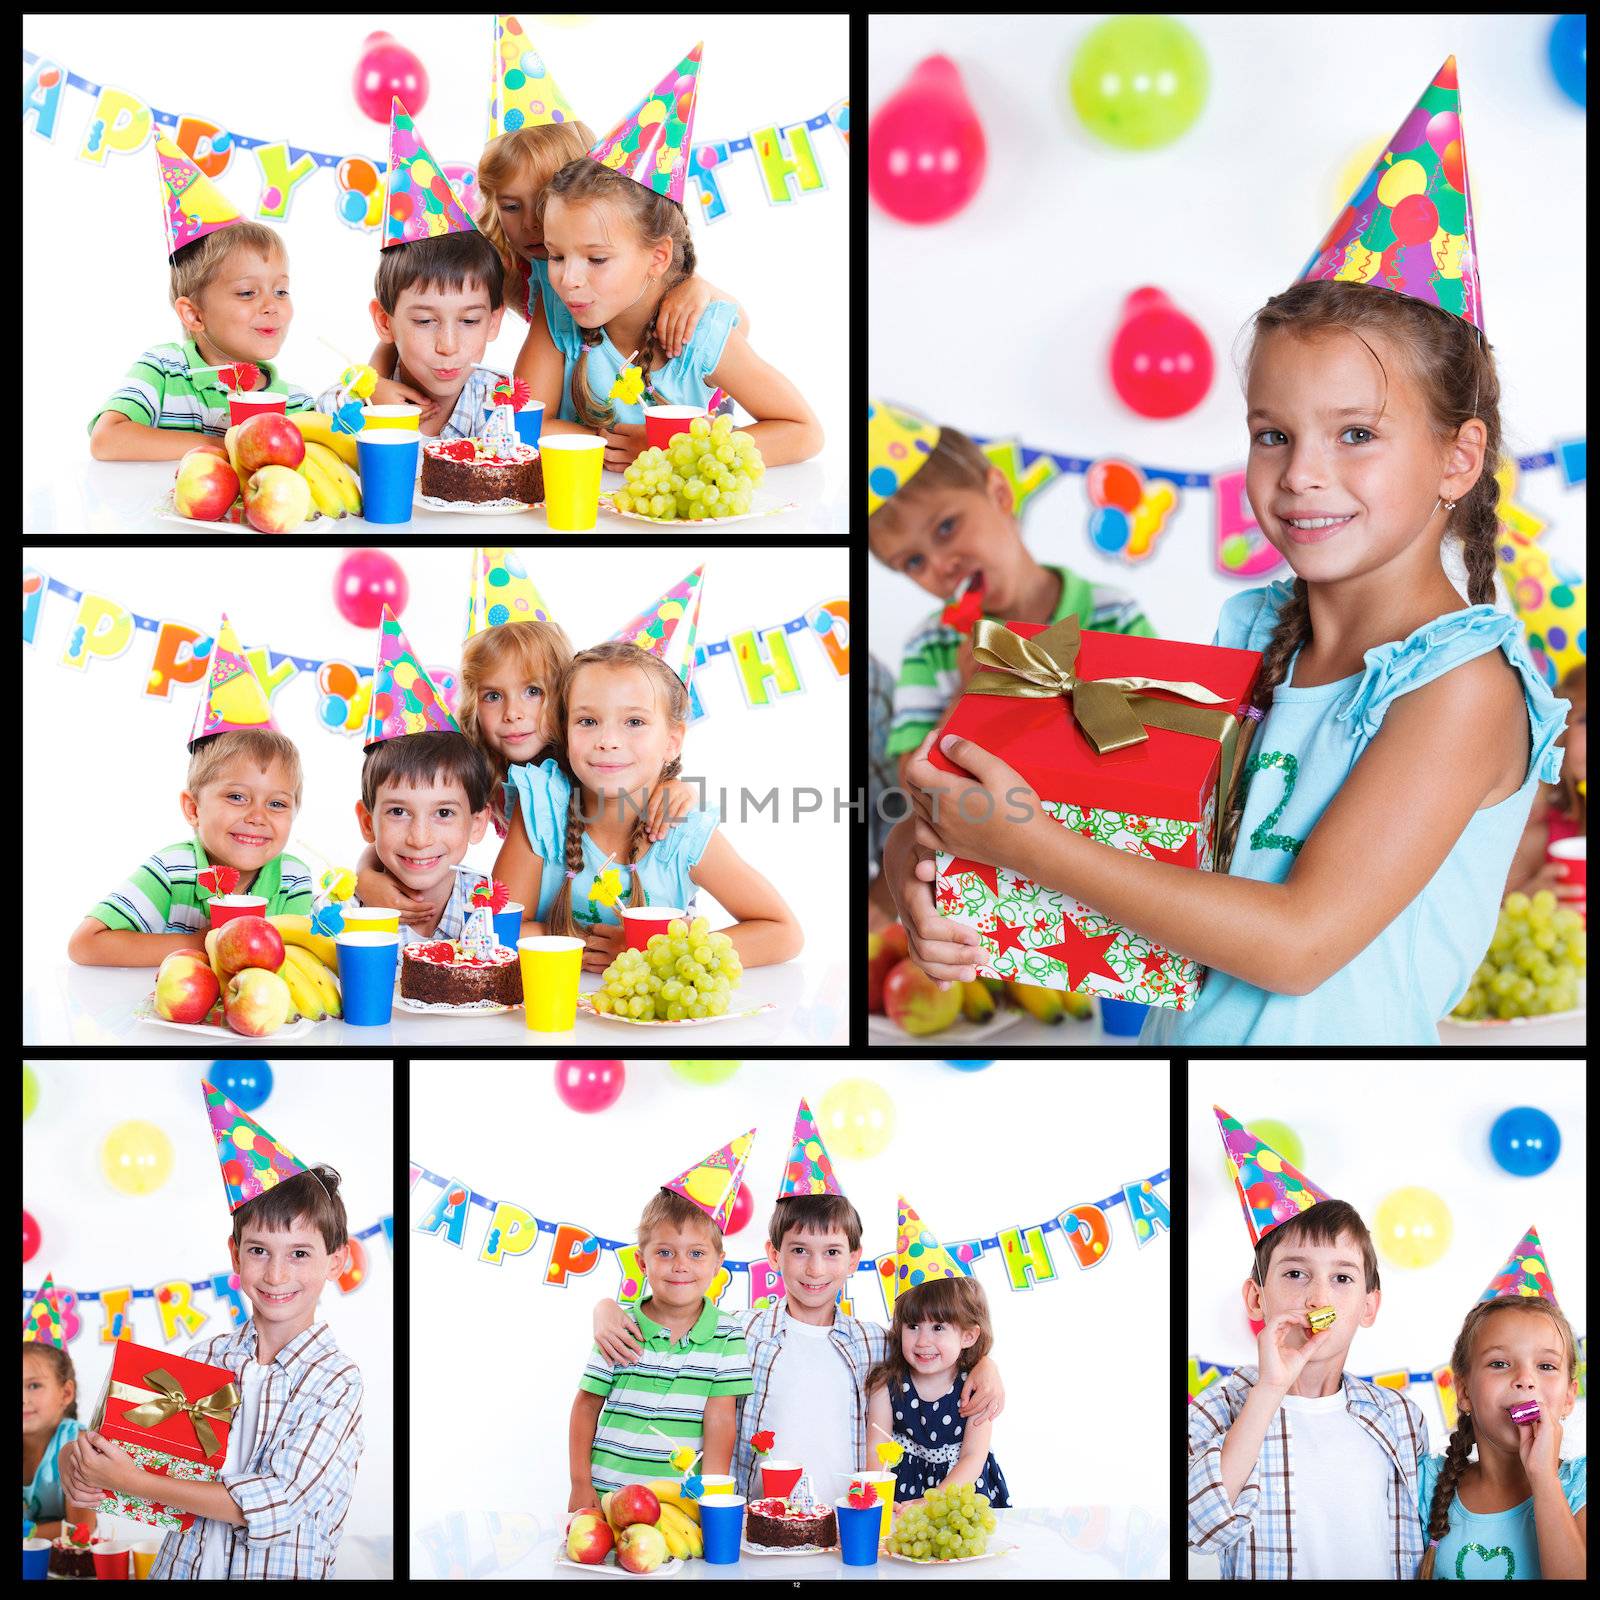 Kids with birthday cake by maxoliki